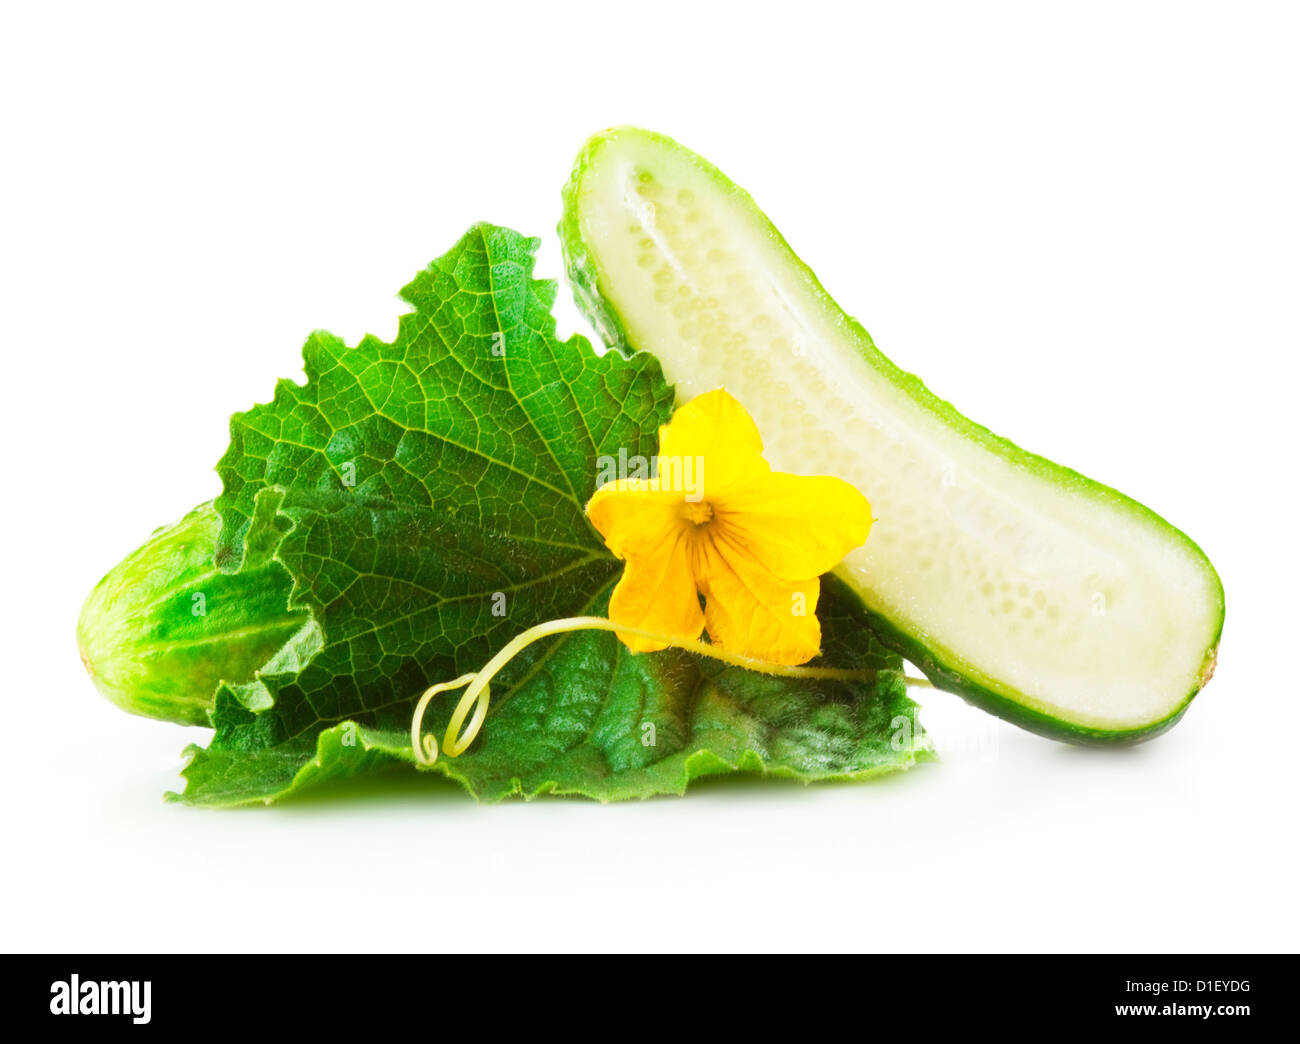 Tas de feuilles fraîches concombres vert et jaune avec des fleurs. Placé sur fond blanc. Close-up Banque D'Images